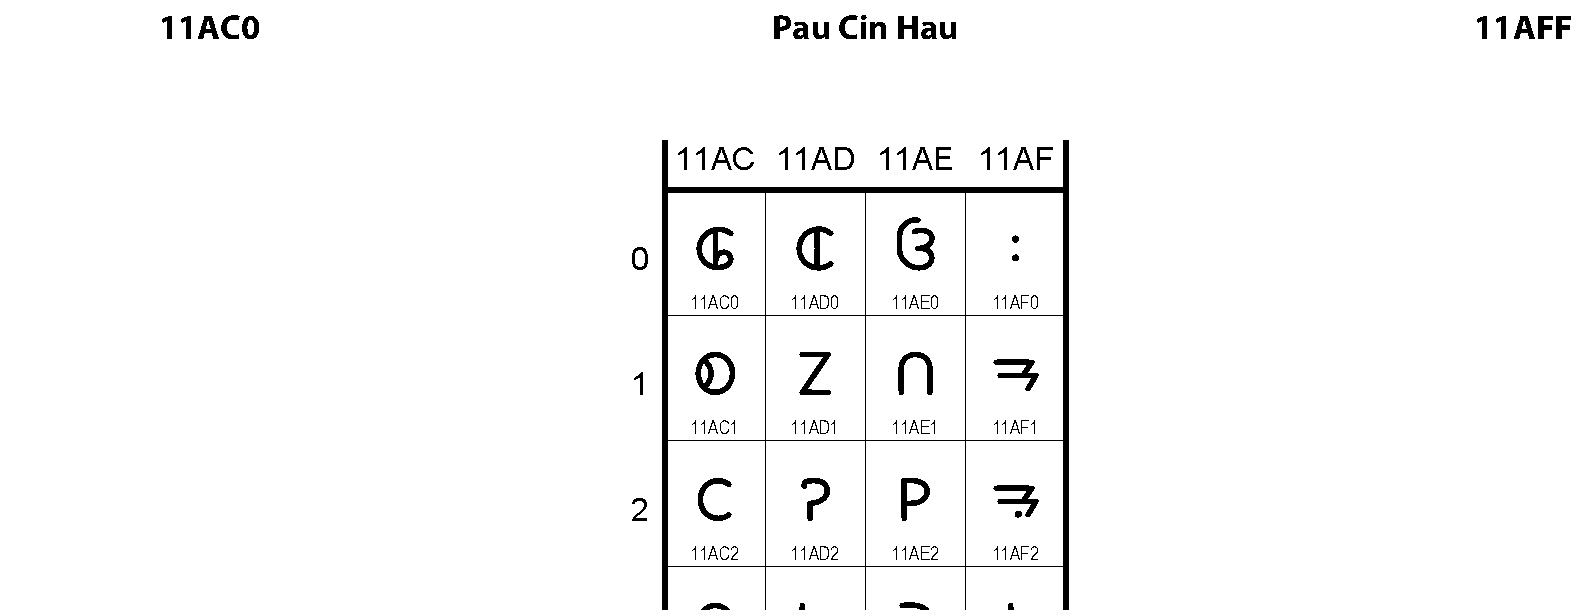 Unicode - Pau Cin Hau